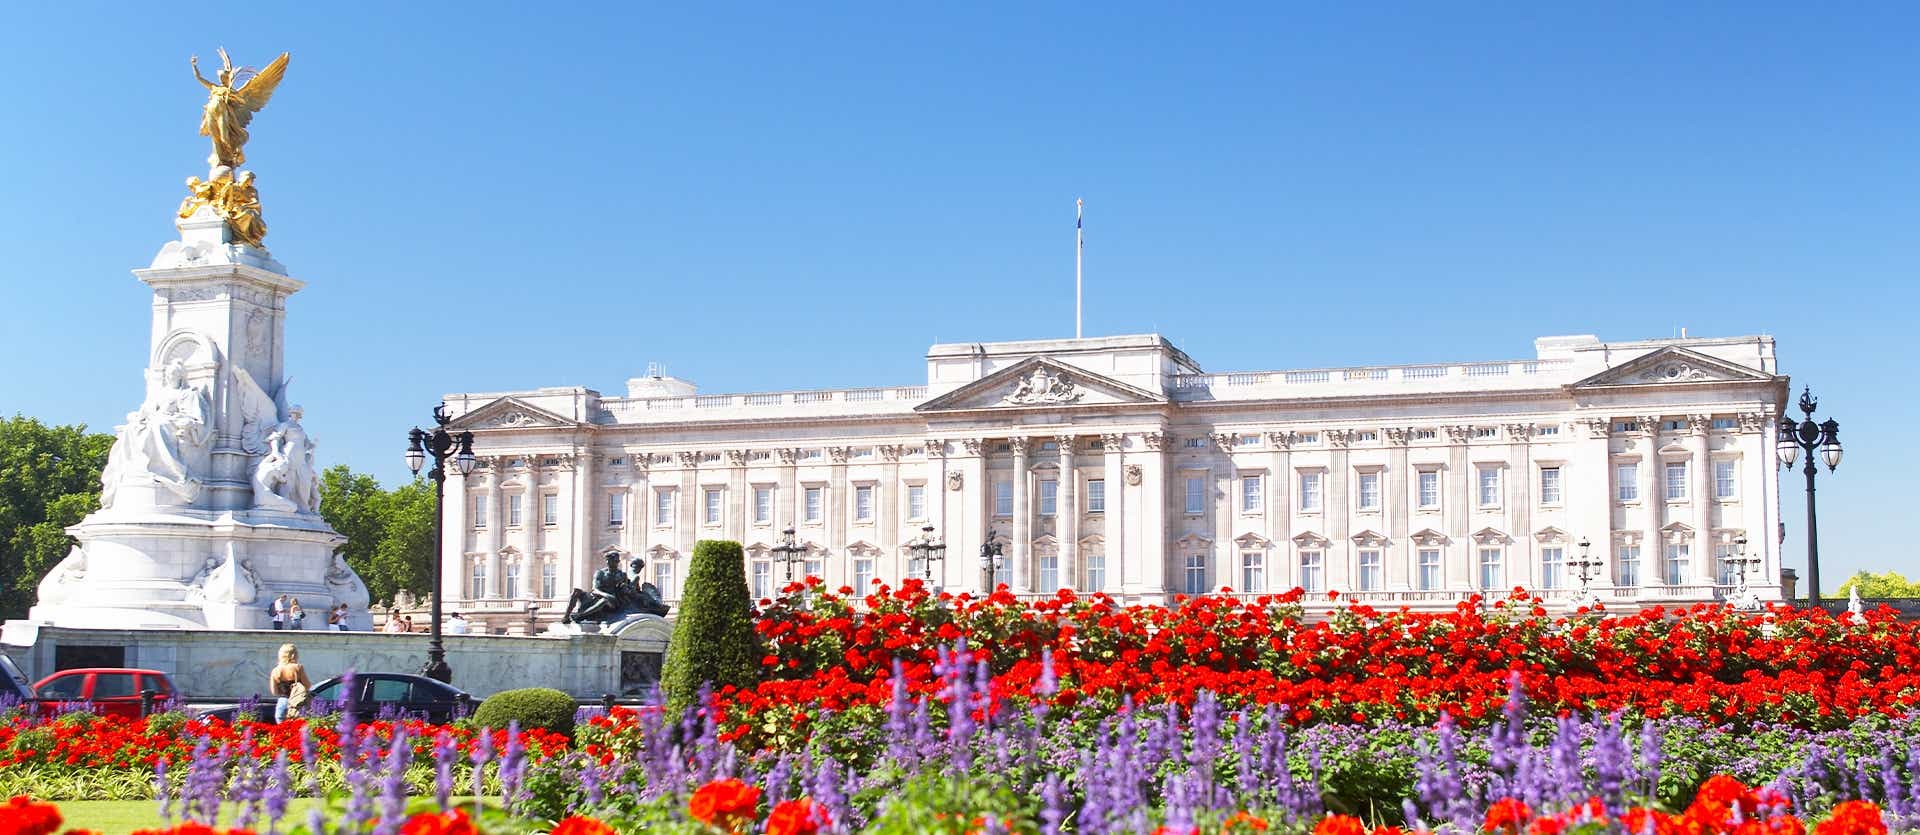 Palacio de Buckingham <span class="iconos separador"></span> Londres <span class="iconos separador"></span> Inglaterra